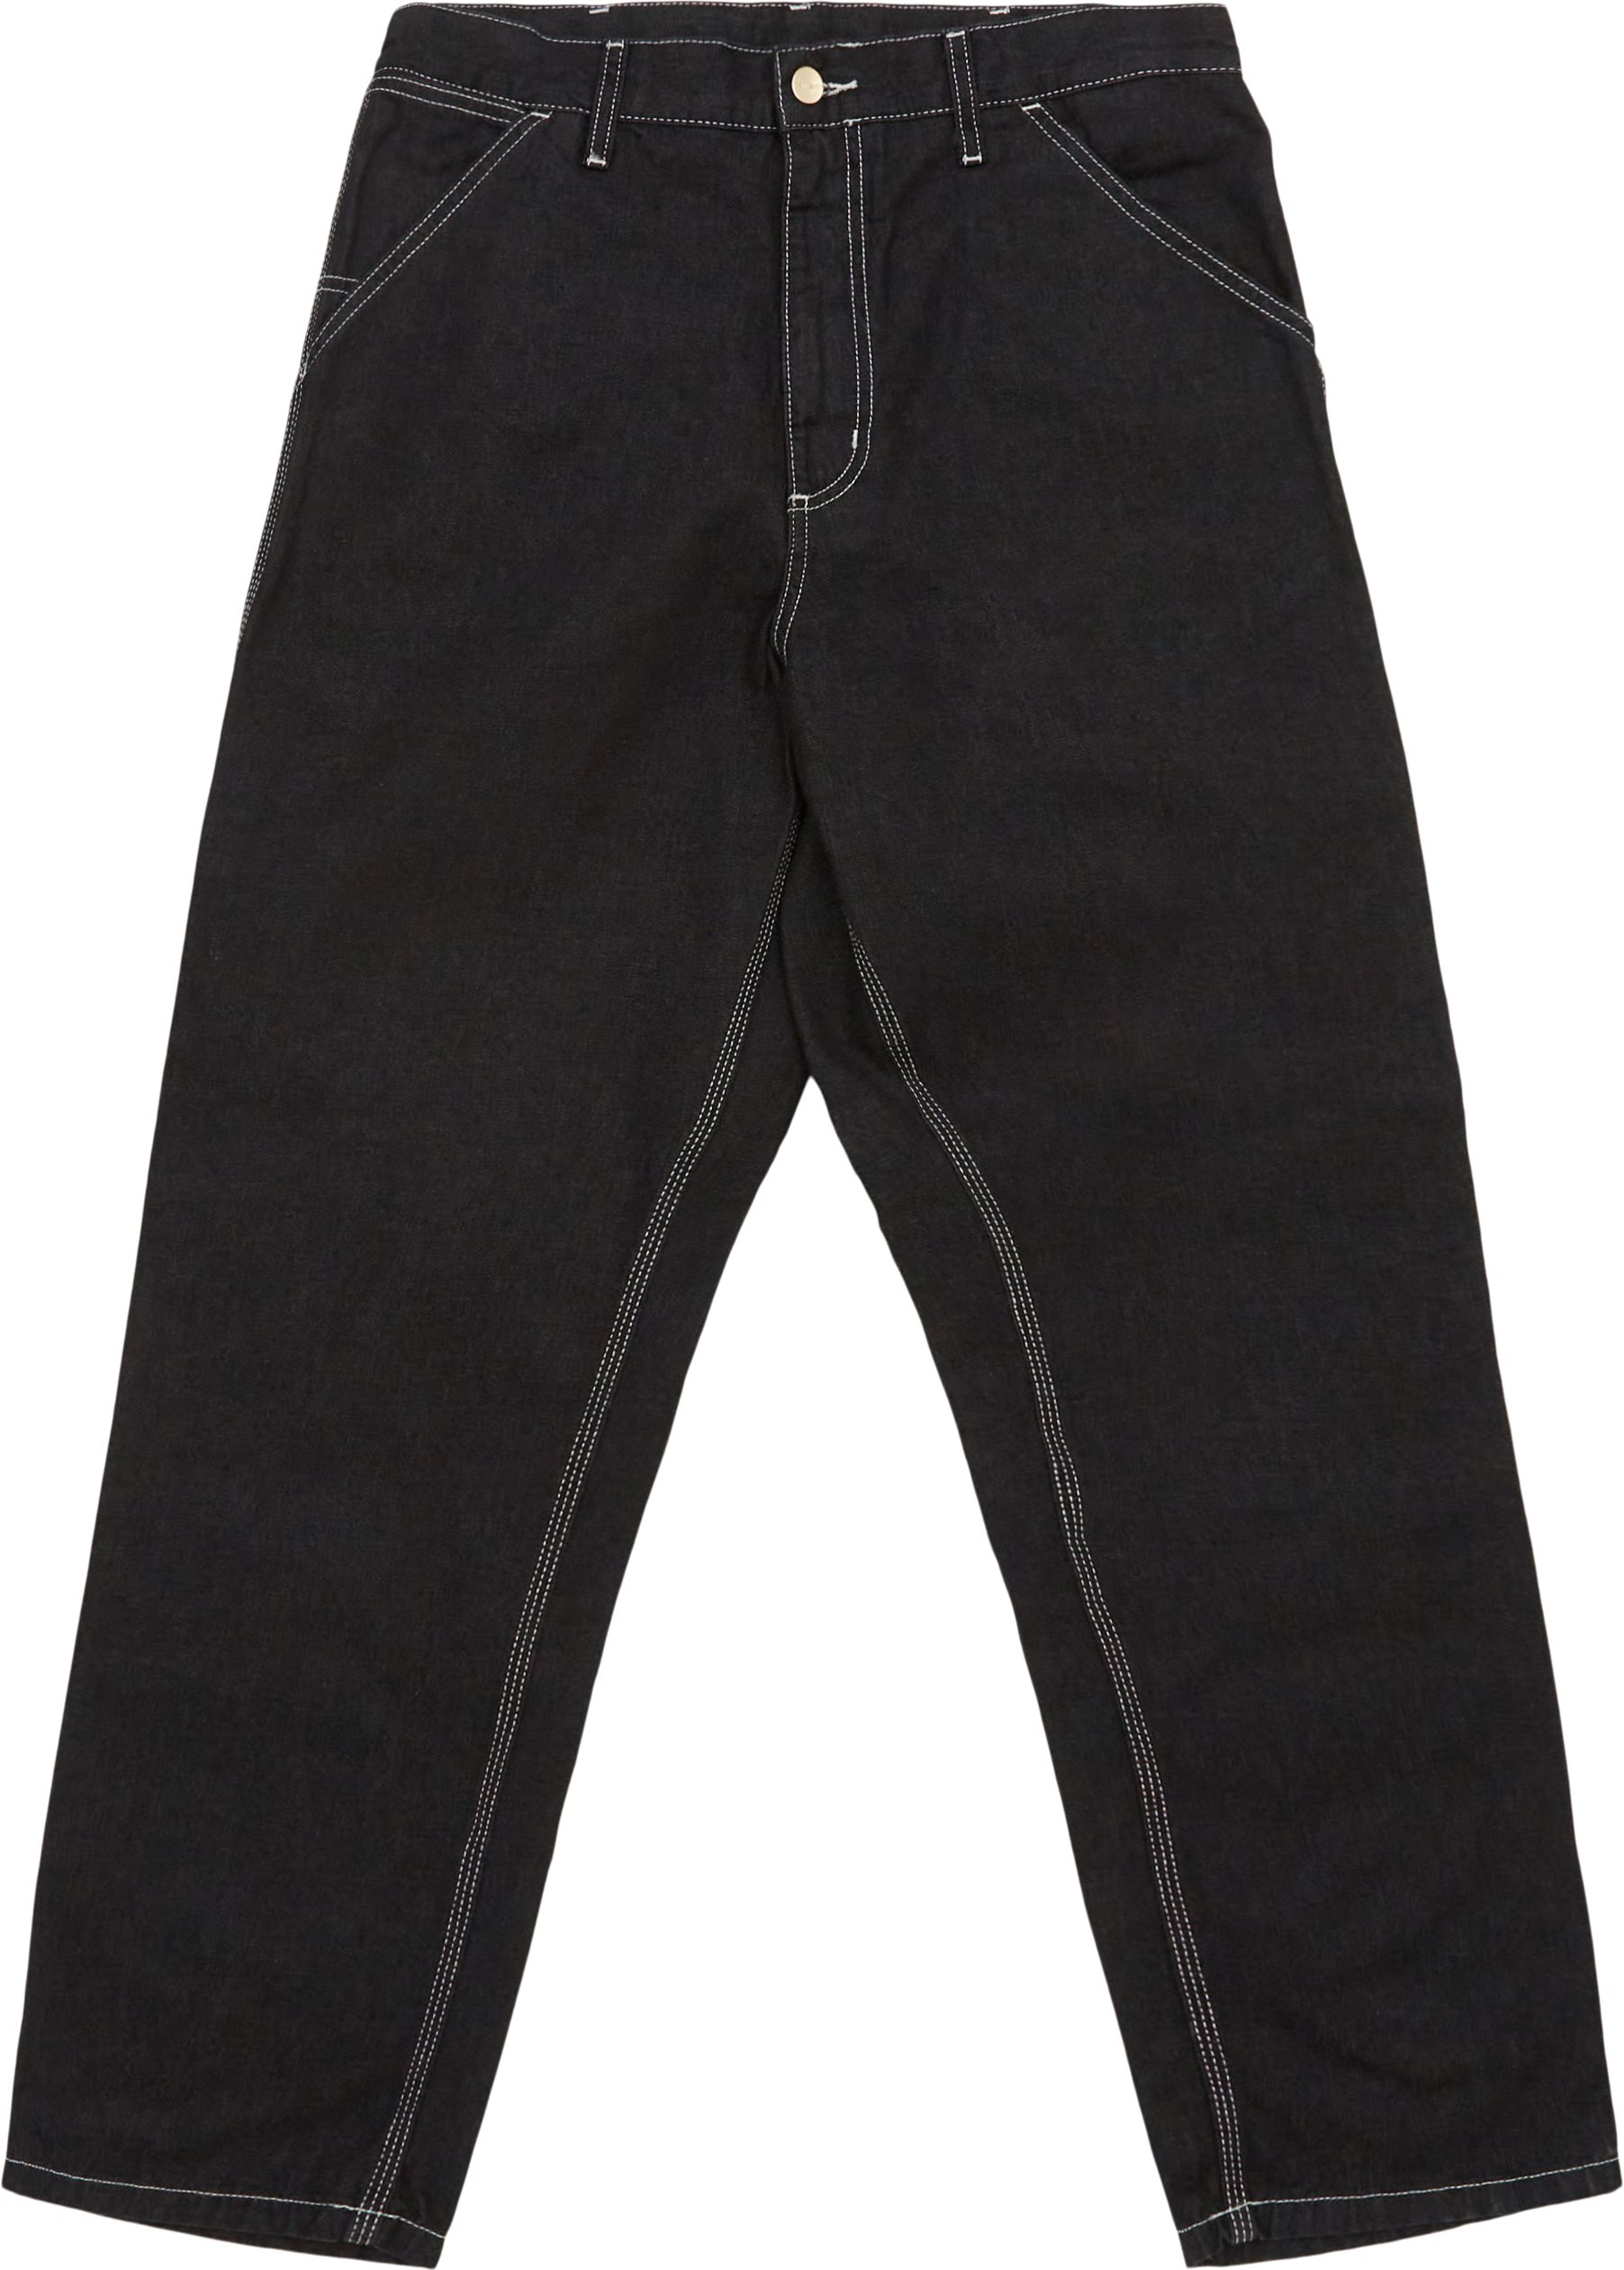 Carhartt WIP Jeans SIMPLE PANT I022947.892Y Sort